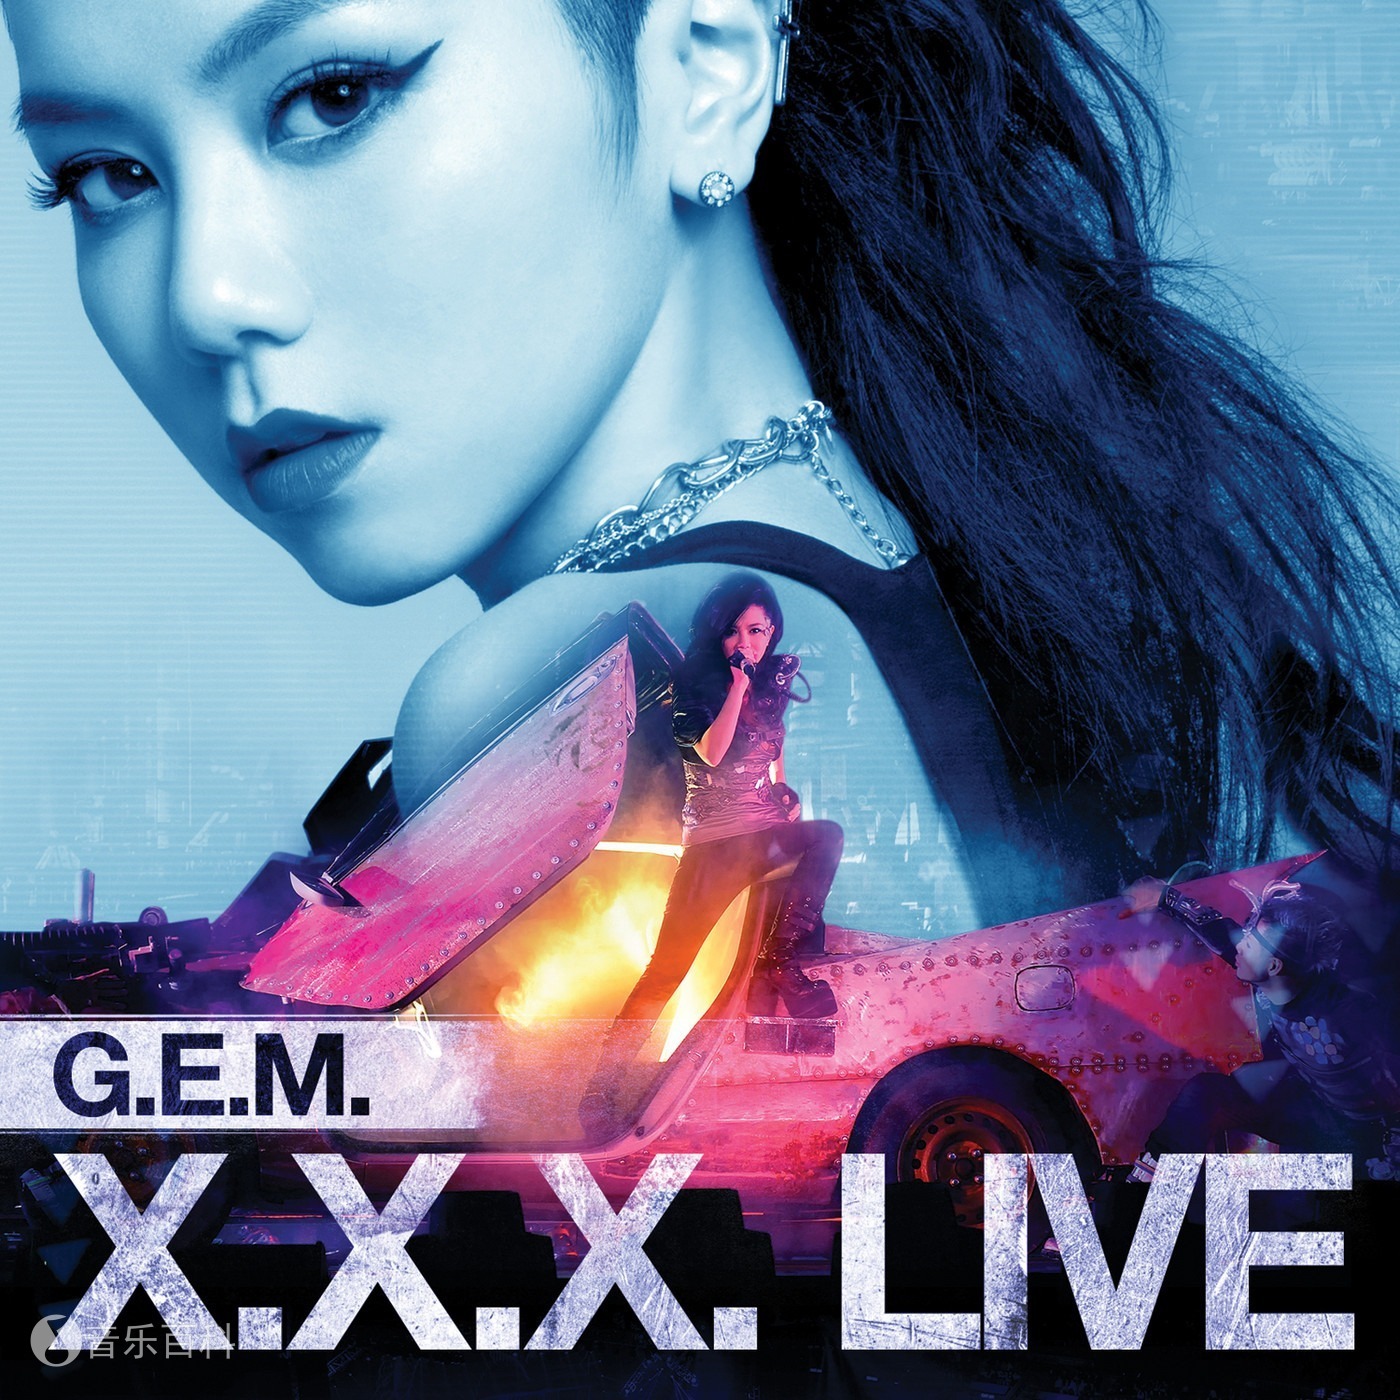 G.E.M.X.X.X. Live